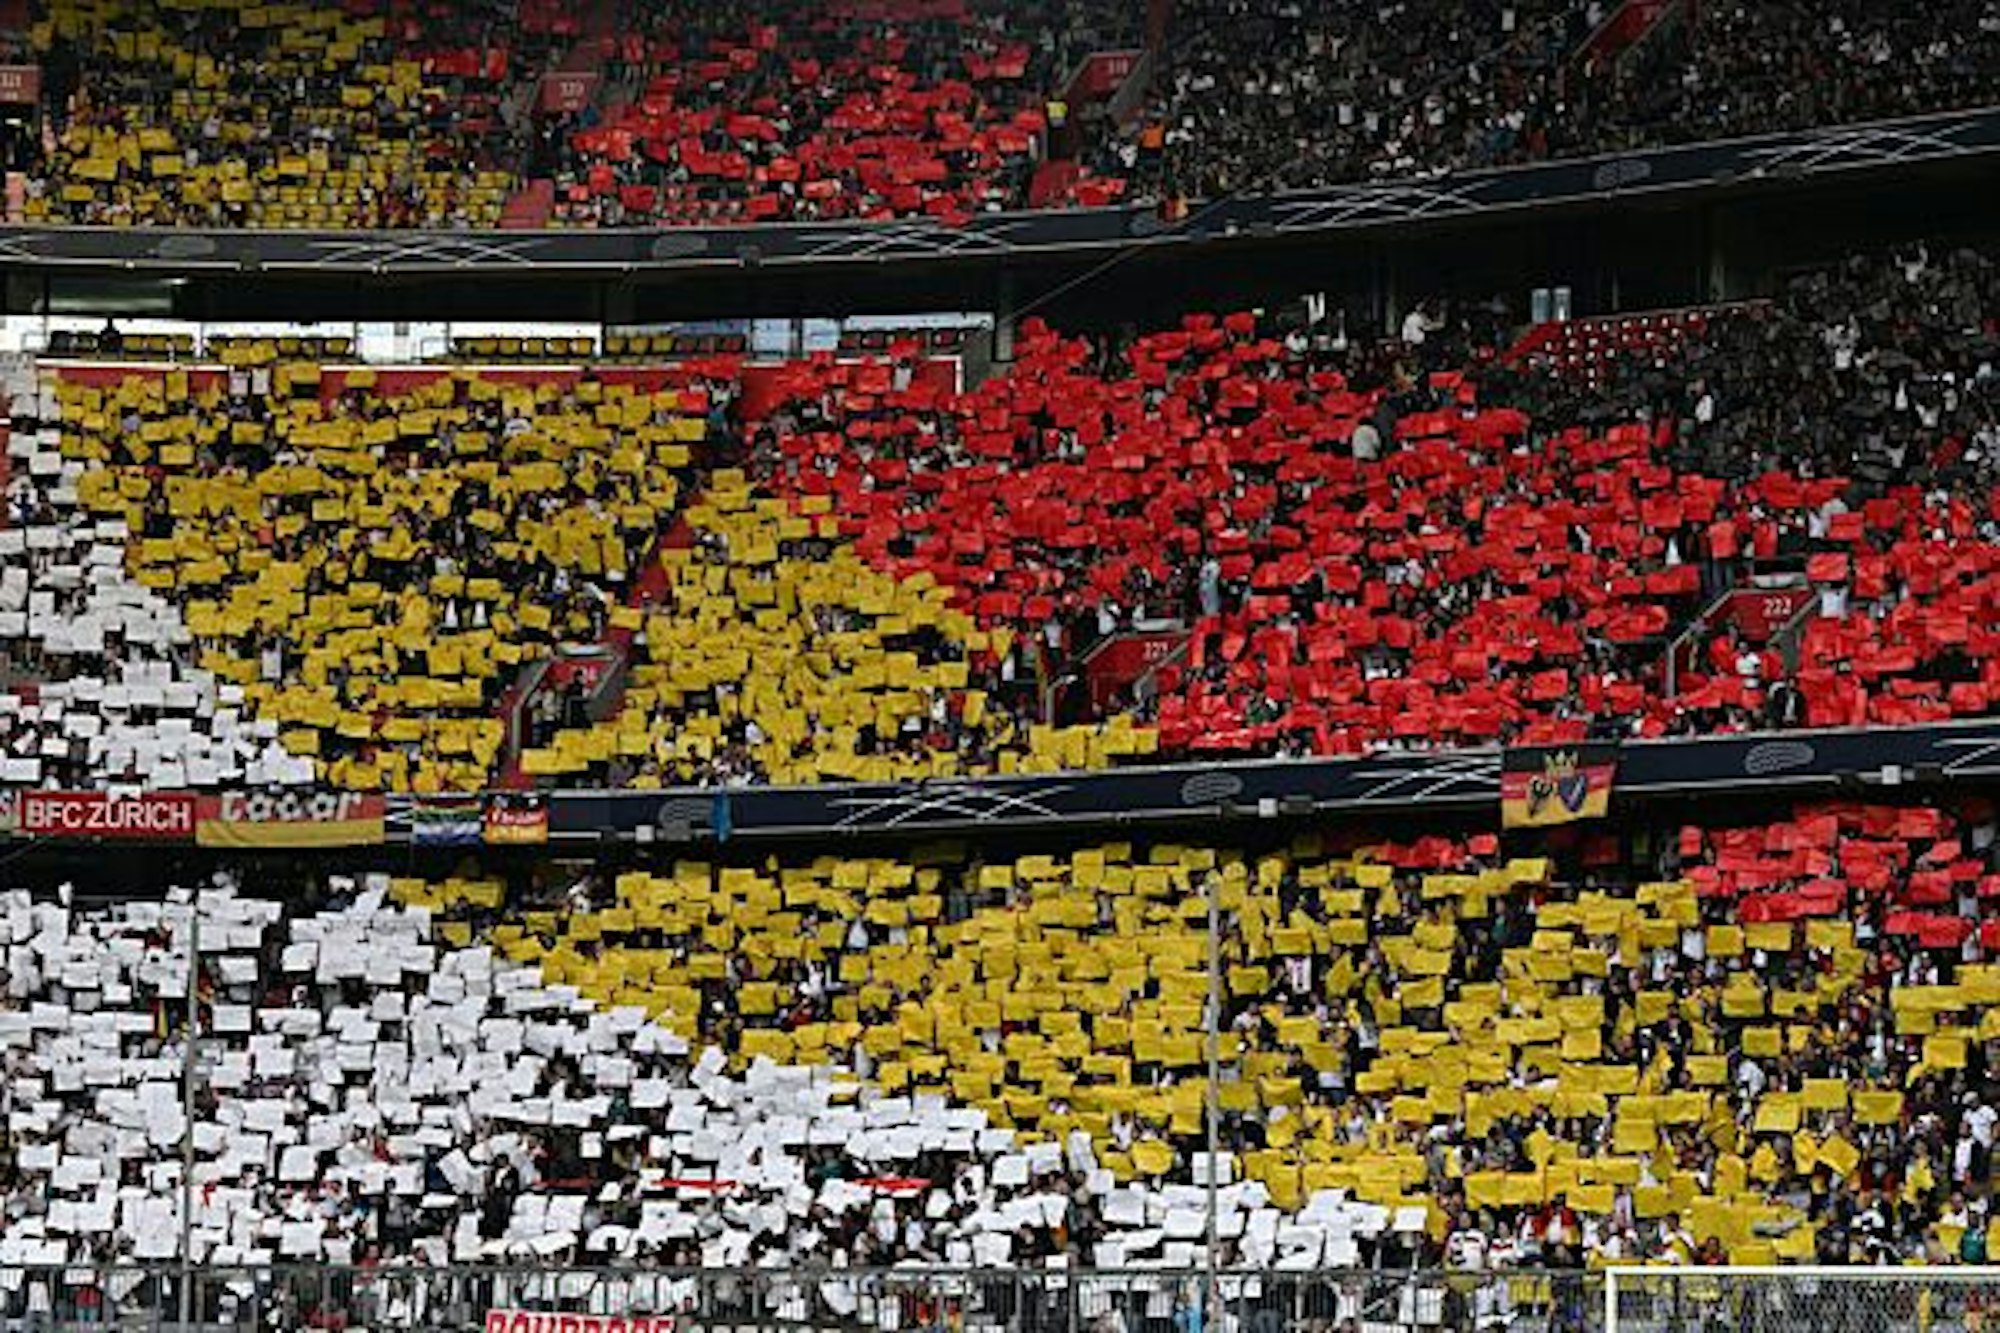 Die Deutschlands Fans begrüßen die Mannschaften mit einer Choreografie in den deutschen Farben.